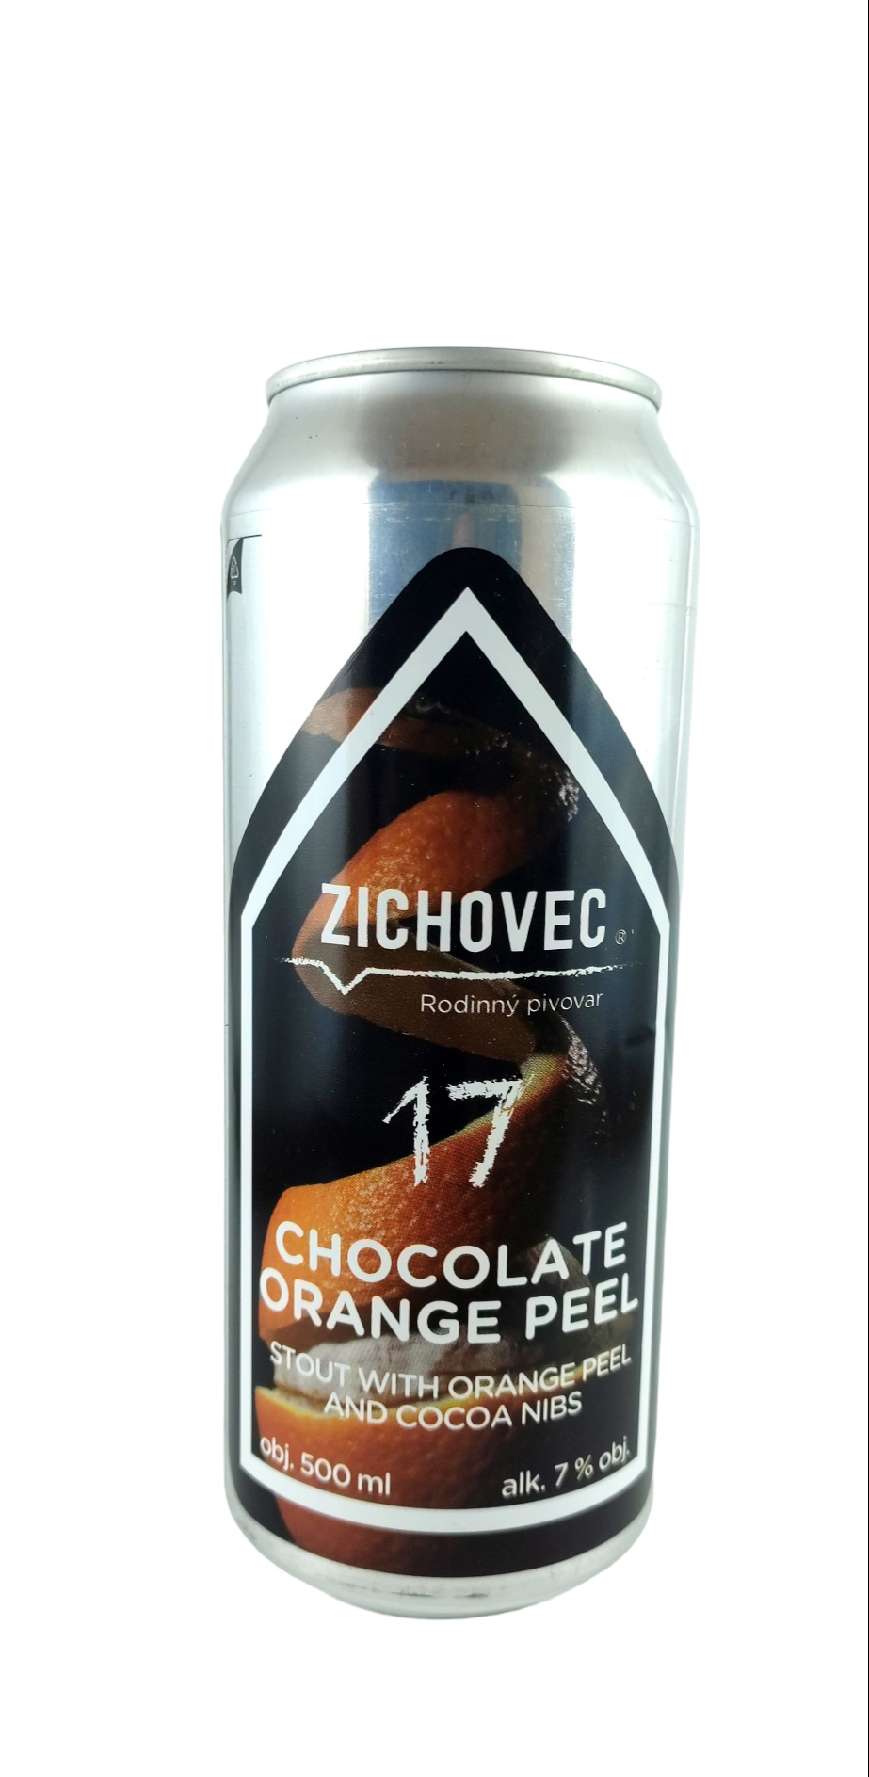 Zichovec Chocolate Orange Peel Stout 17°